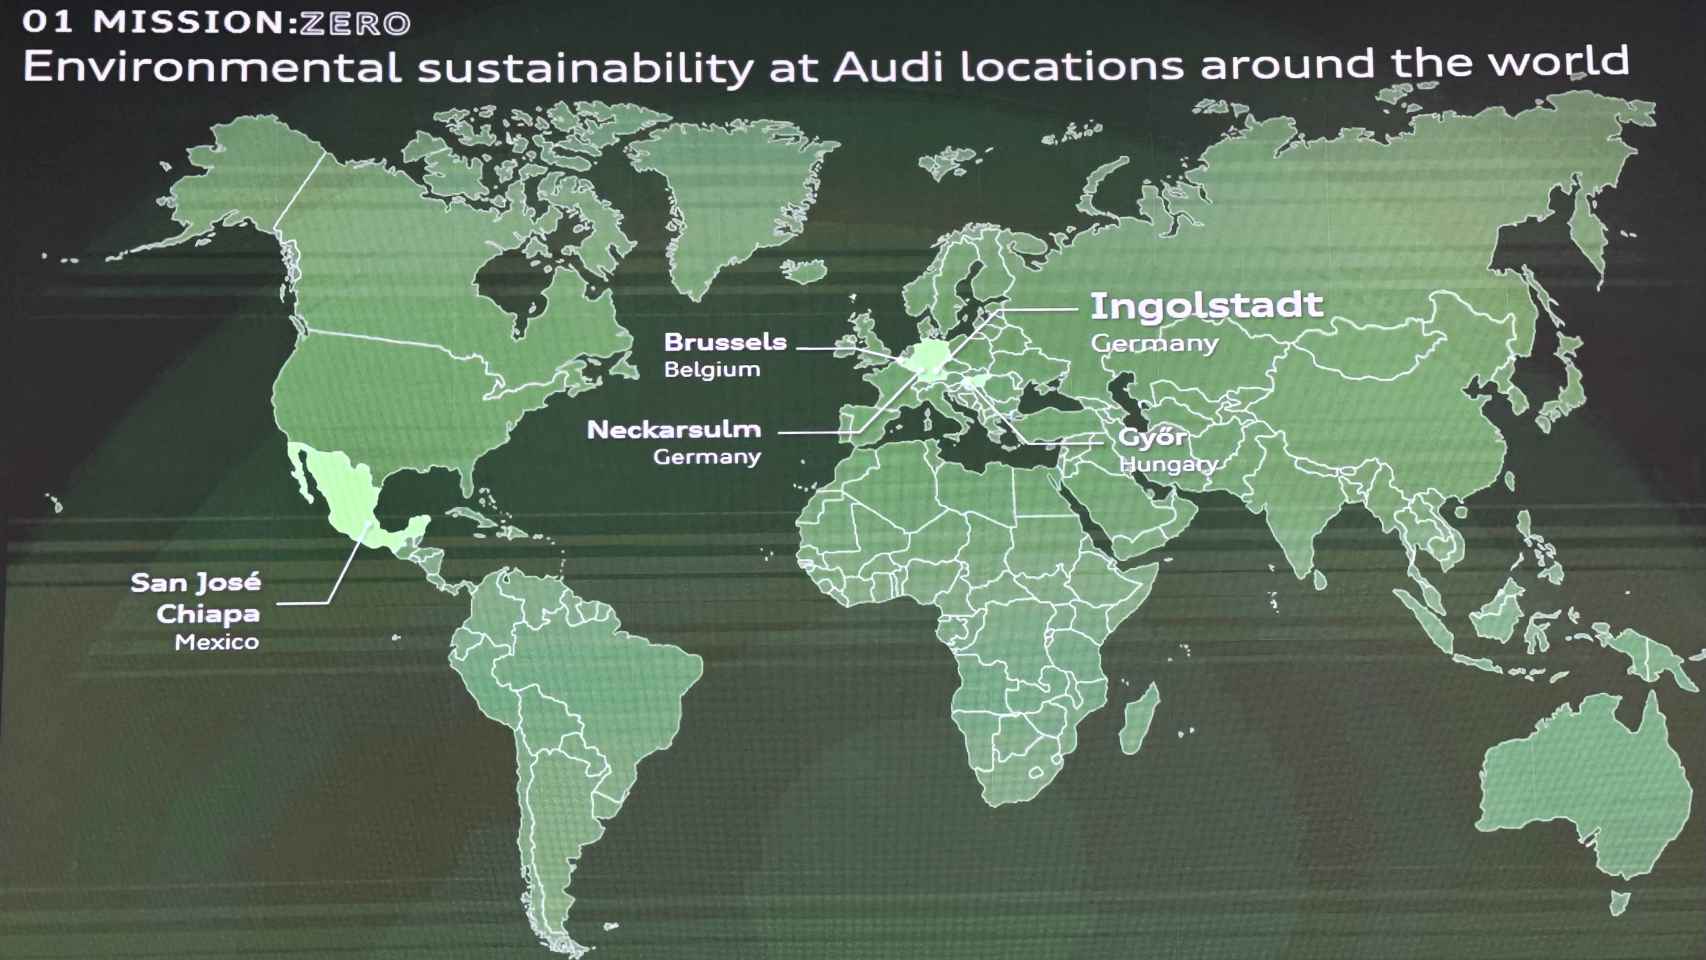 Sostenibilidad medioambiental en las fábricas de Audi.